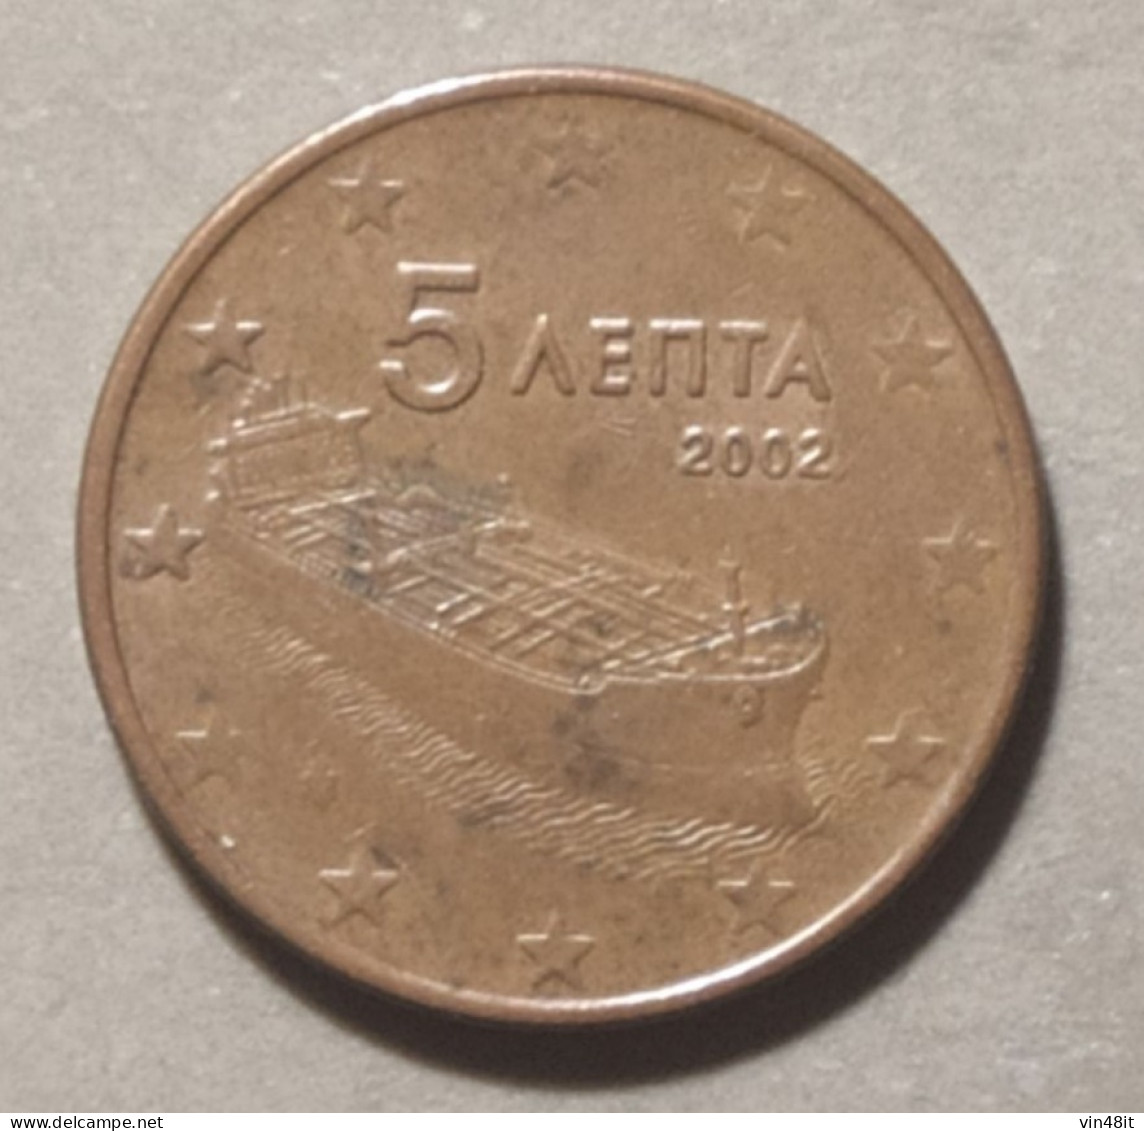 2002  -  GRECIA - MONETA IN EURO - DEL VALORE  DI  5  CENTESIMI - USATA - Greece